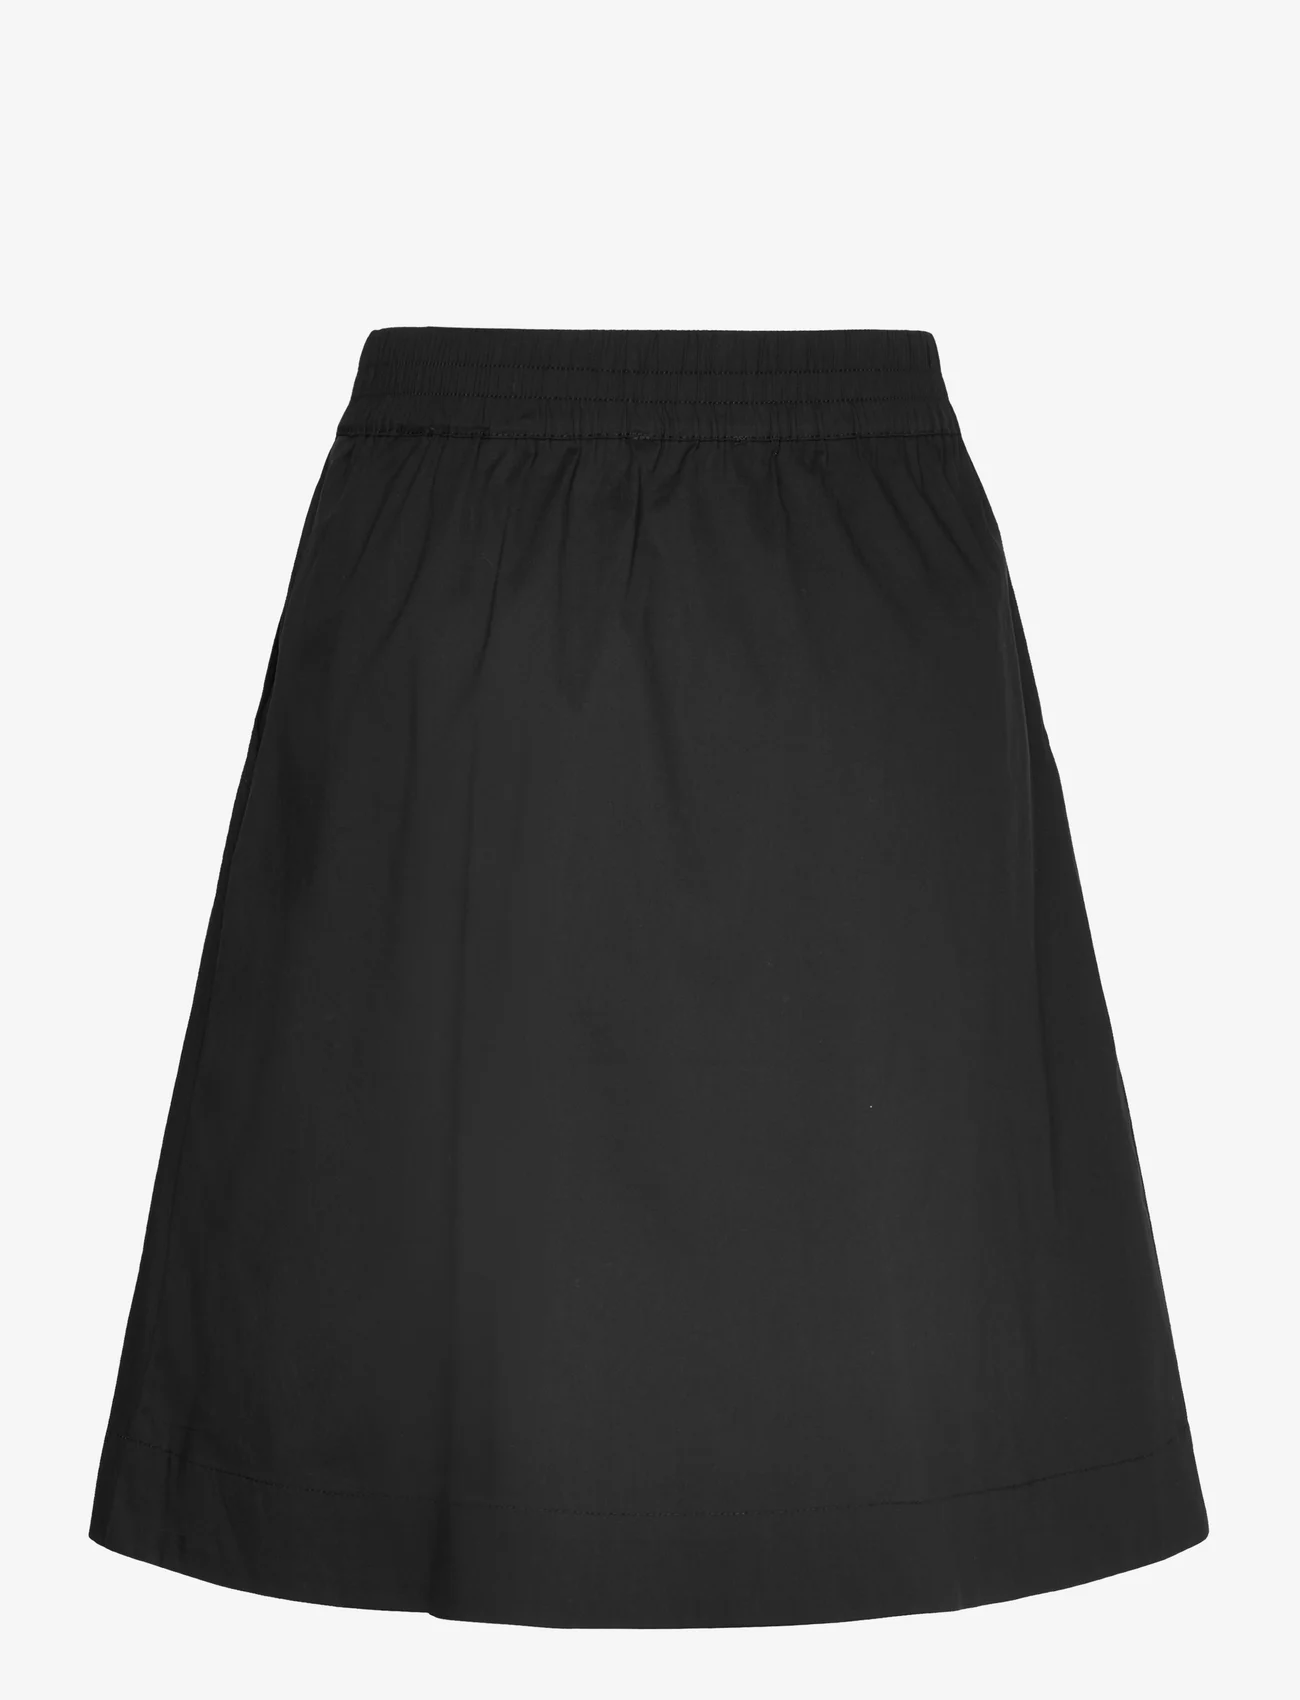 Coster Copenhagen - CC Heart PHOEBE short skirt - korte skjørt - black - 1